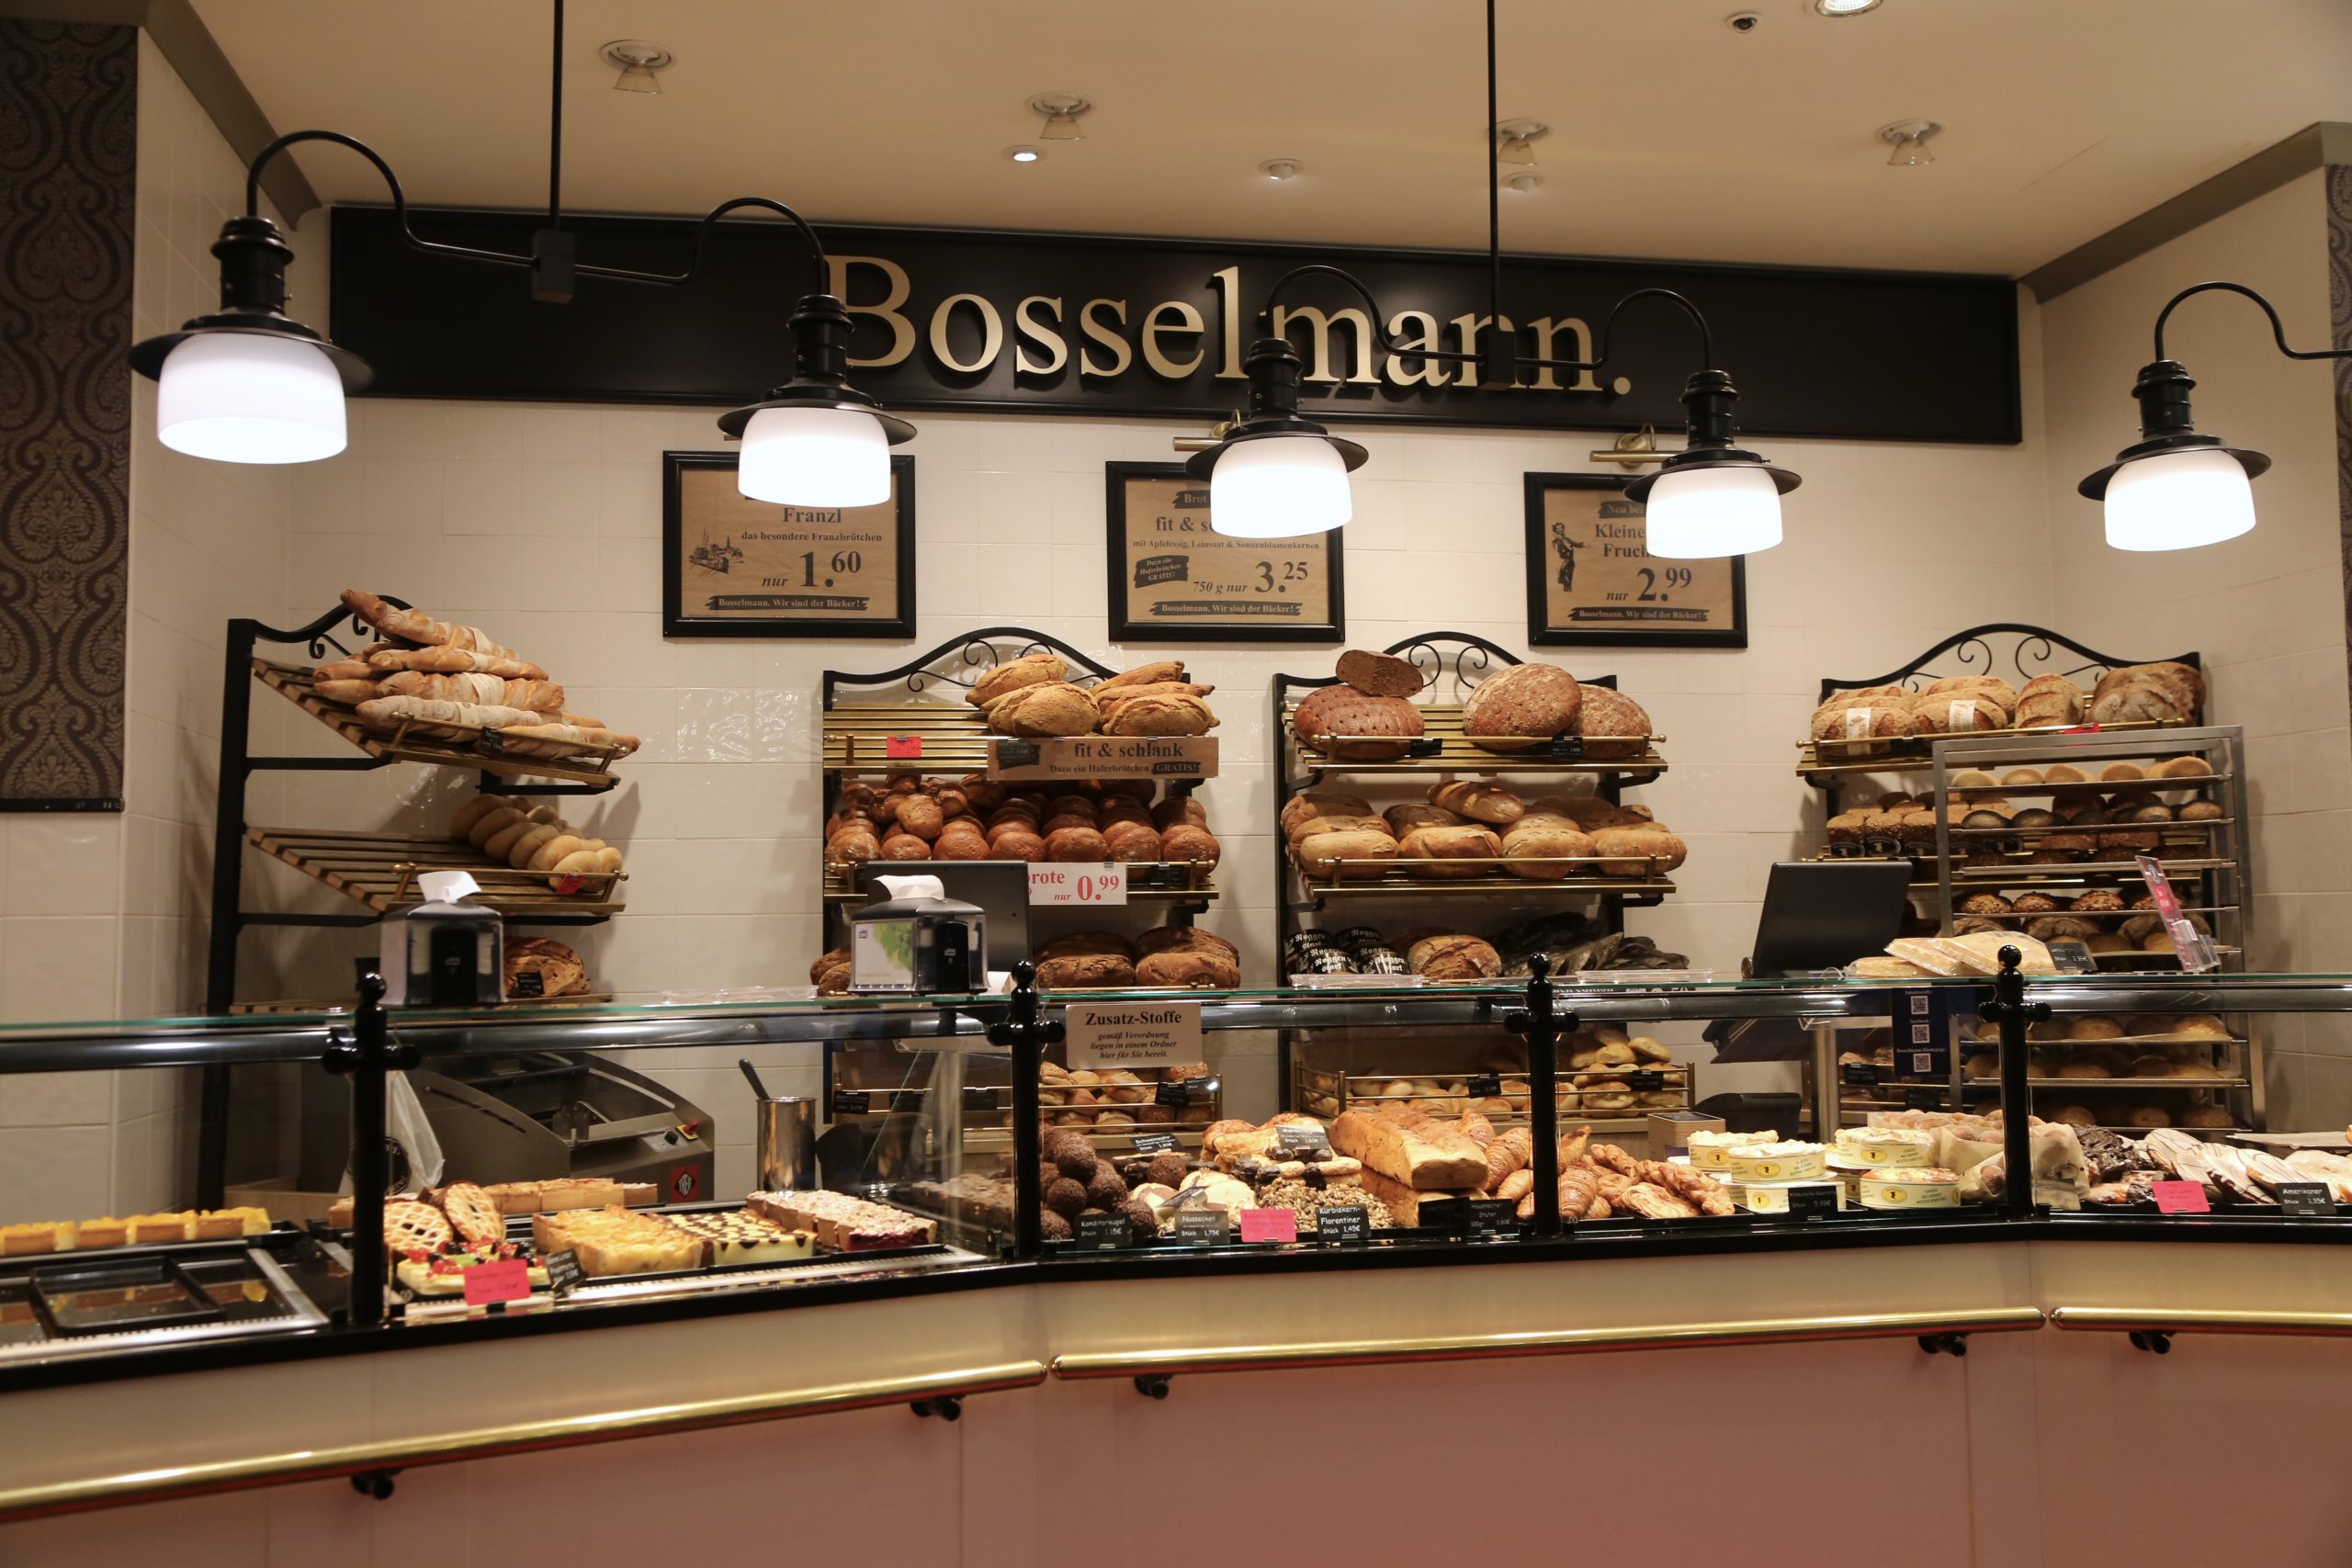 Bosselmann, an amazing German bakery chain